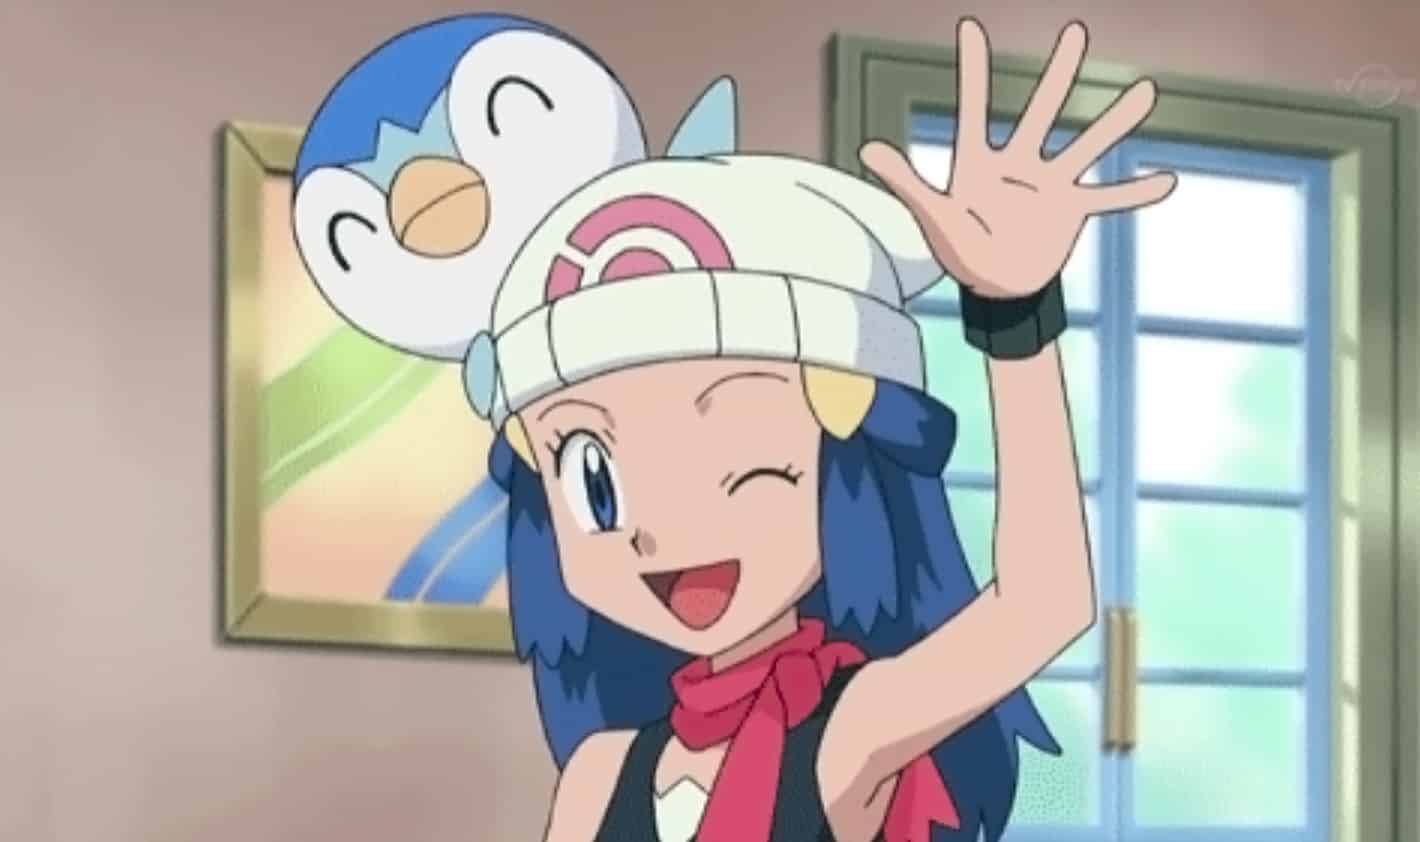 Se publica oficialmente en YouTube el episodio completo “Una doncella inicia viaje” de la Serie Pokémon Diamante y Perla